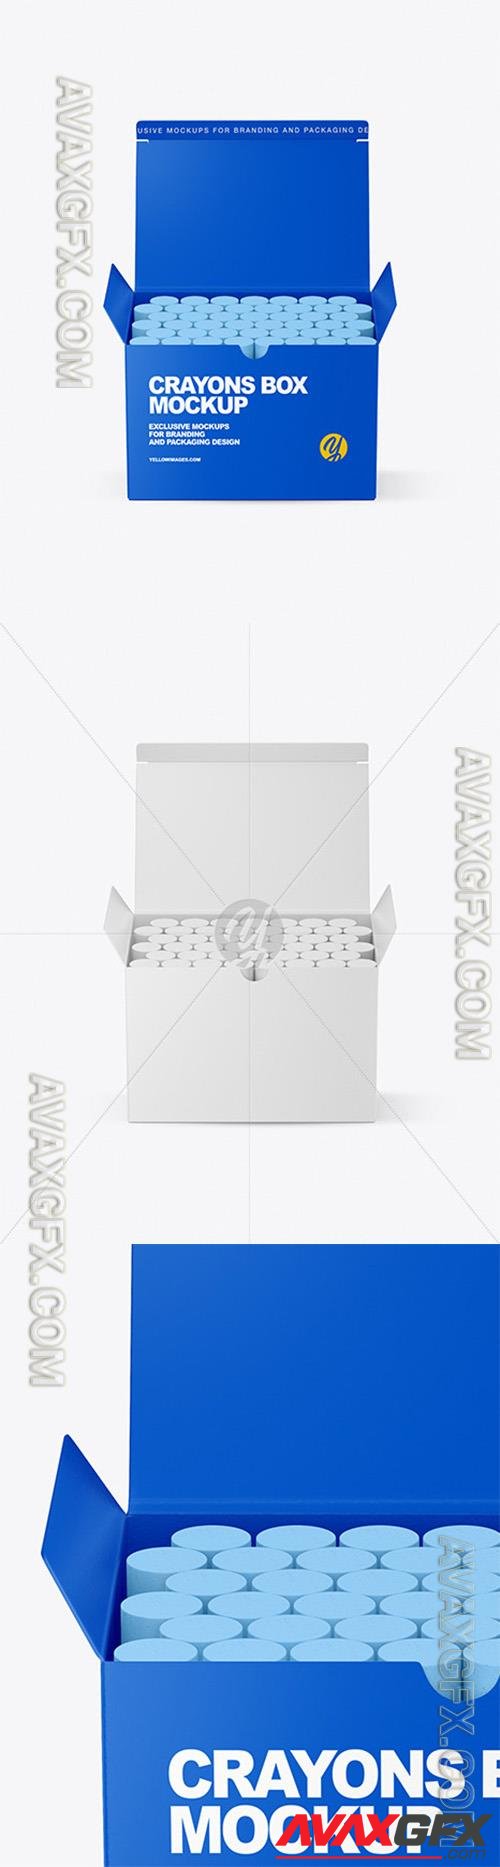 Paper Box with Crayons Mockup 89406 TIF